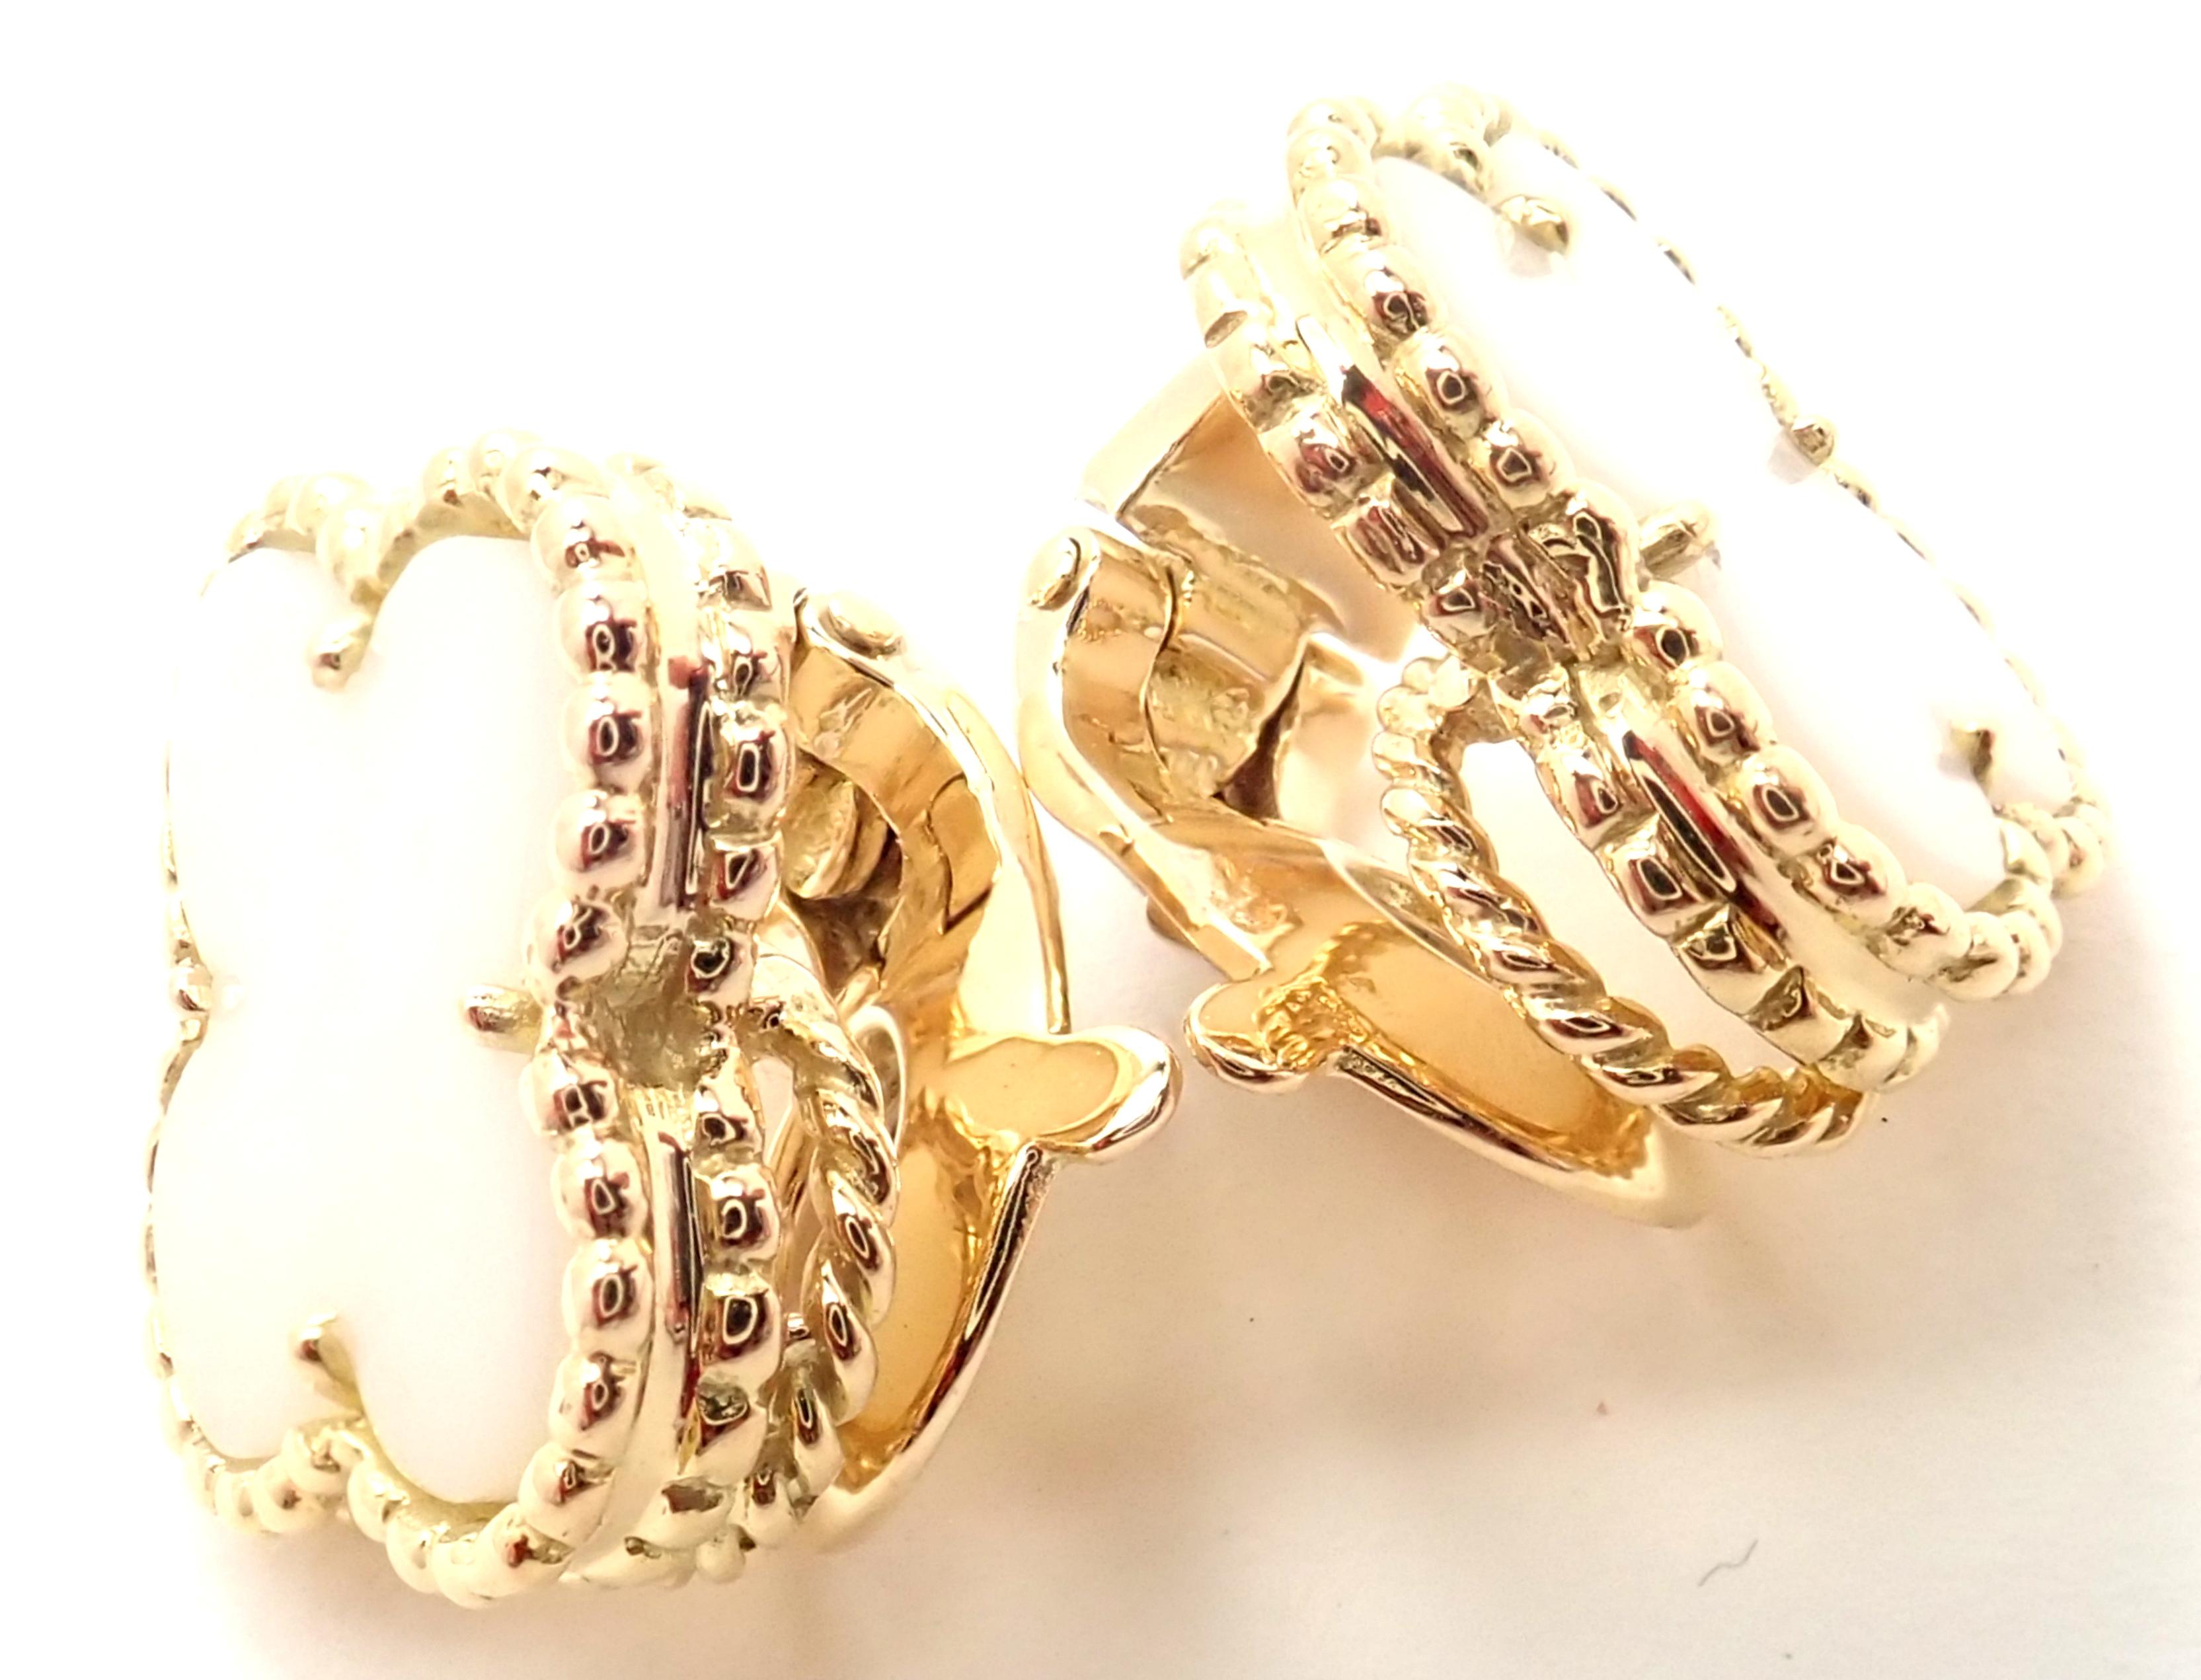 18k Gelbgold Vintage Alhambra White Coral Ohrringe von Van Cleef & Arpels. 
Mit 2 weißen Korallensteinen in Alhambra-Form: je 15 mm. 
Diese Ohrringe sind für nicht gepiercte Ohren gedacht, können aber durch Hinzufügen von Stiften auch für gepiercte